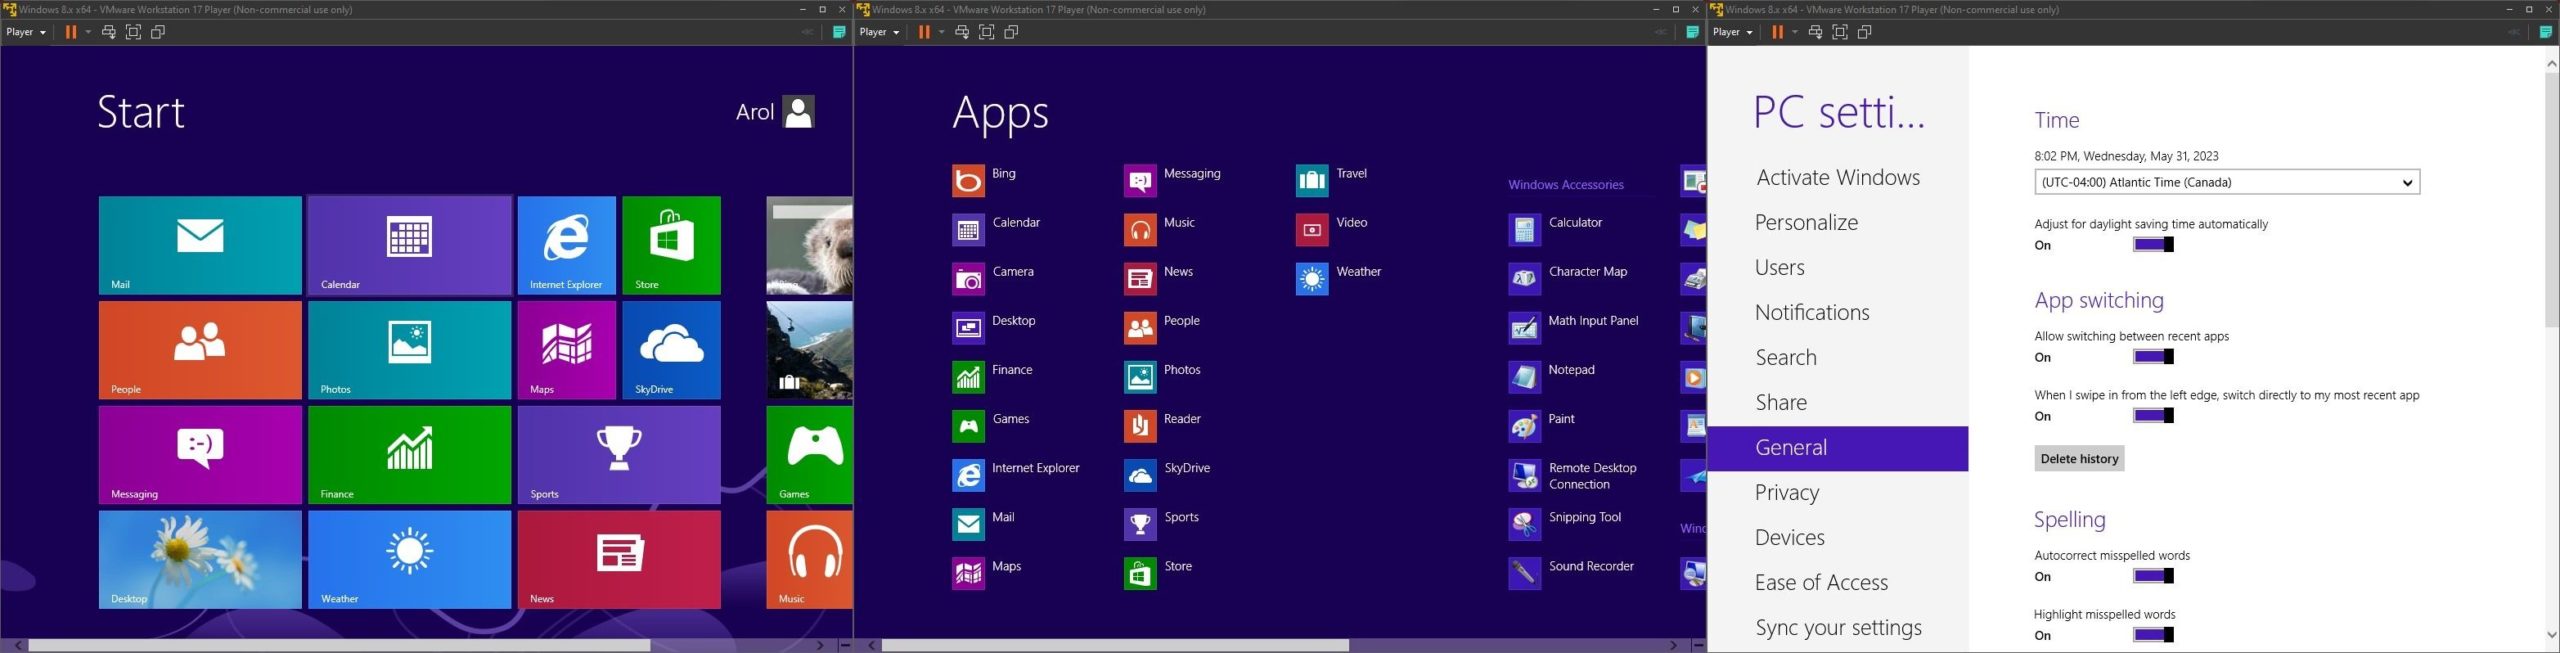 Capturas de tela do Windows 8 em uma máquina virtual, mostrando o menu Iniciar, o menu de todos os aplicativos e o aplicativo de configurações